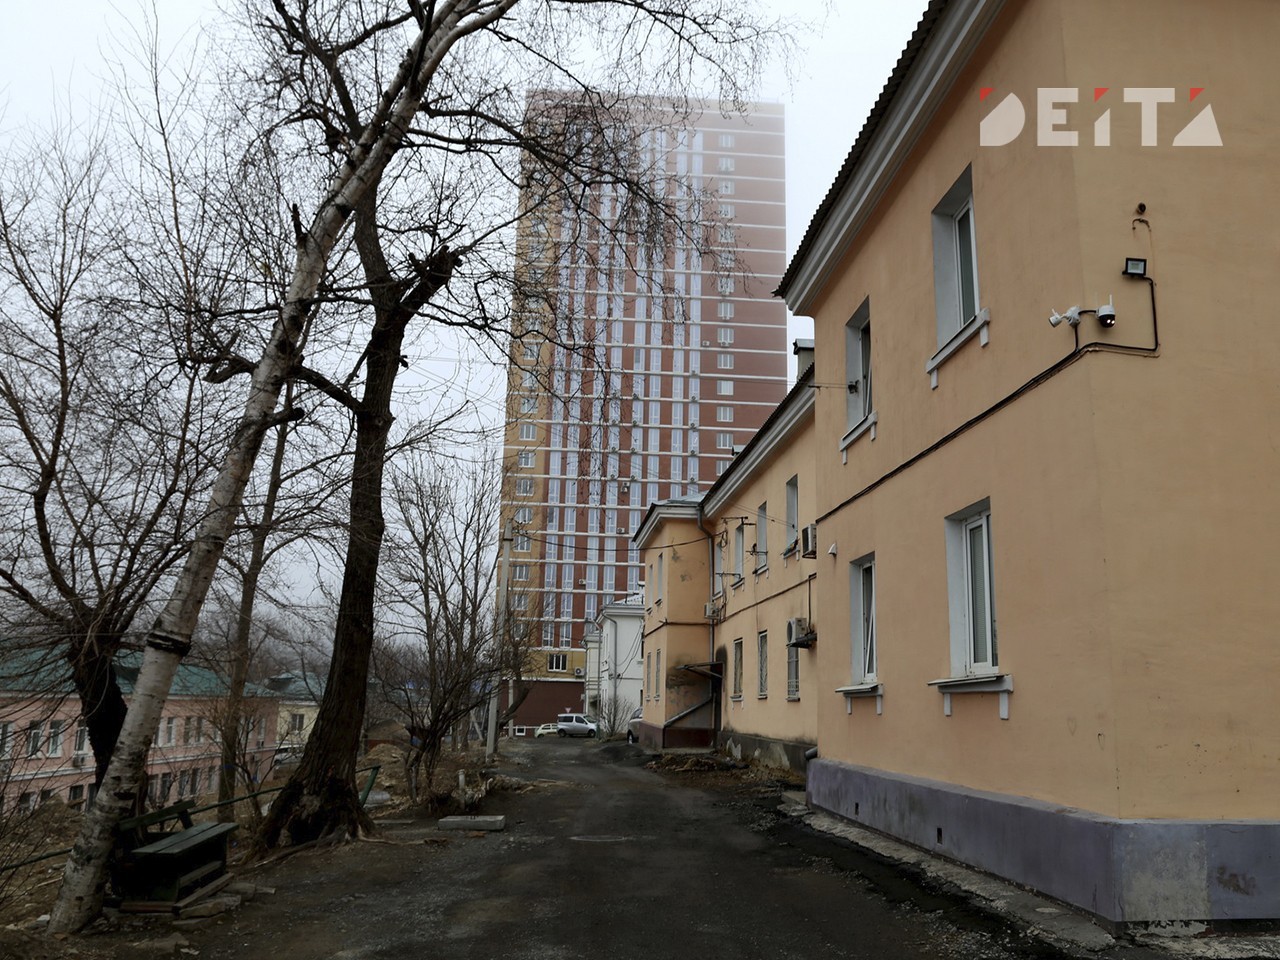 Втрое больше жителей высказалось против сноса домов во Владивостоке